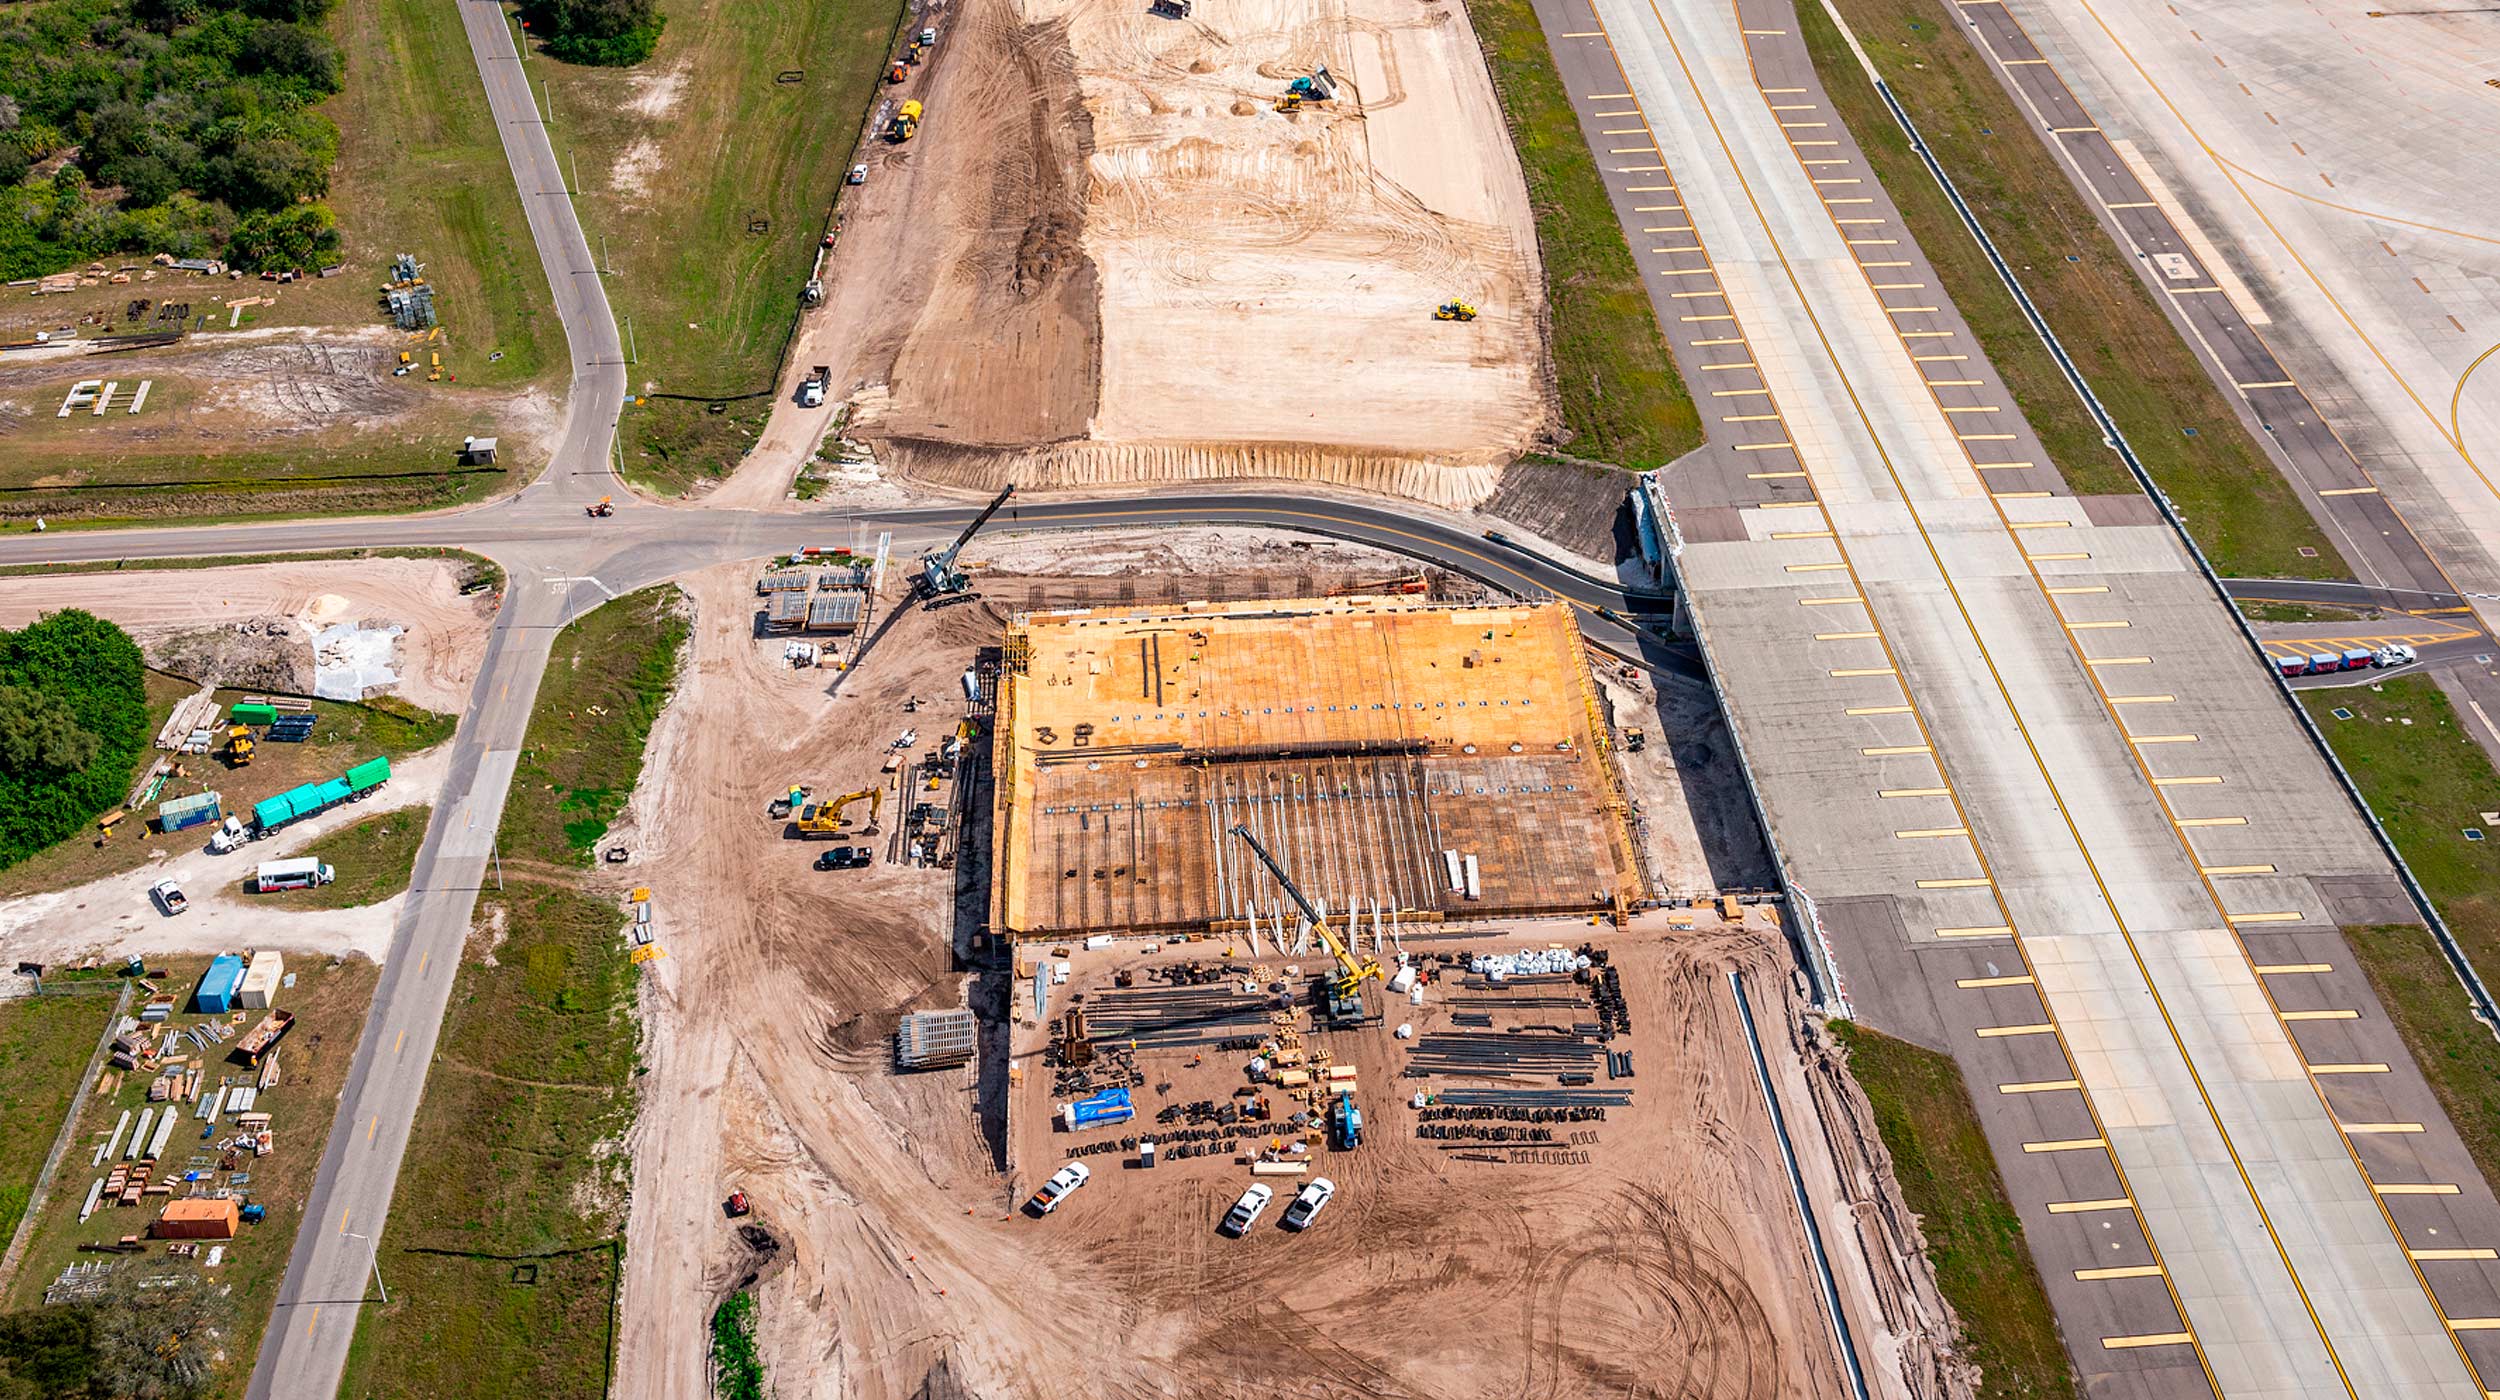 La ampliación del Aeropuerto Internacional de Tampa ha requerido de soluciones de encofrado y apeo para la nueva vía de acceso a taxis. ULMA está colaborando en la construcción del nuevo puente para el Taxiway 'A'.